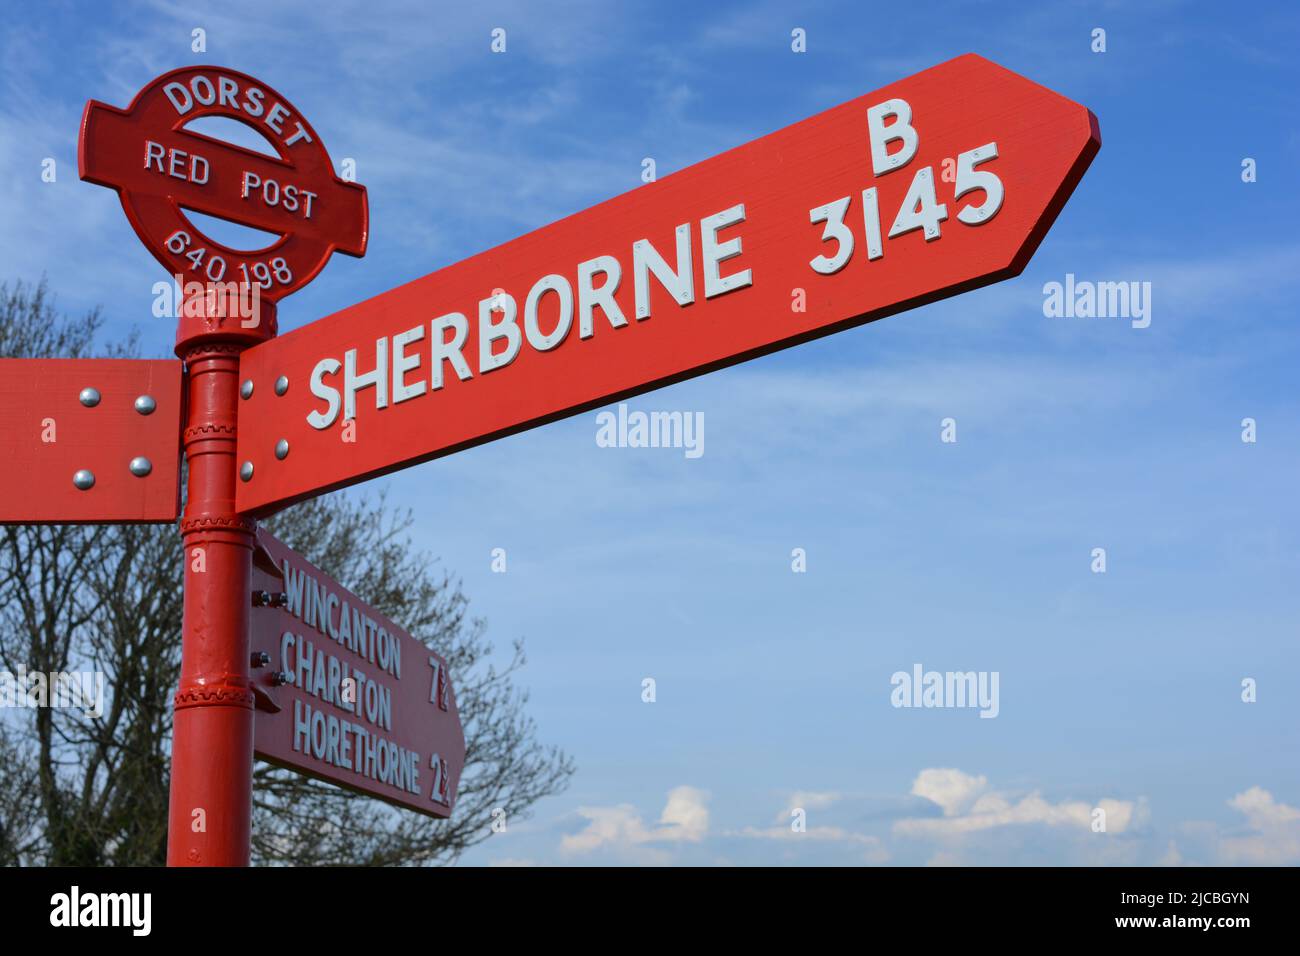 Tradizionale e caratteristico Dorset Red Post, segnaletica stradale che indica Sherborne sulla strada B1345 vicino Poyntington Foto Stock